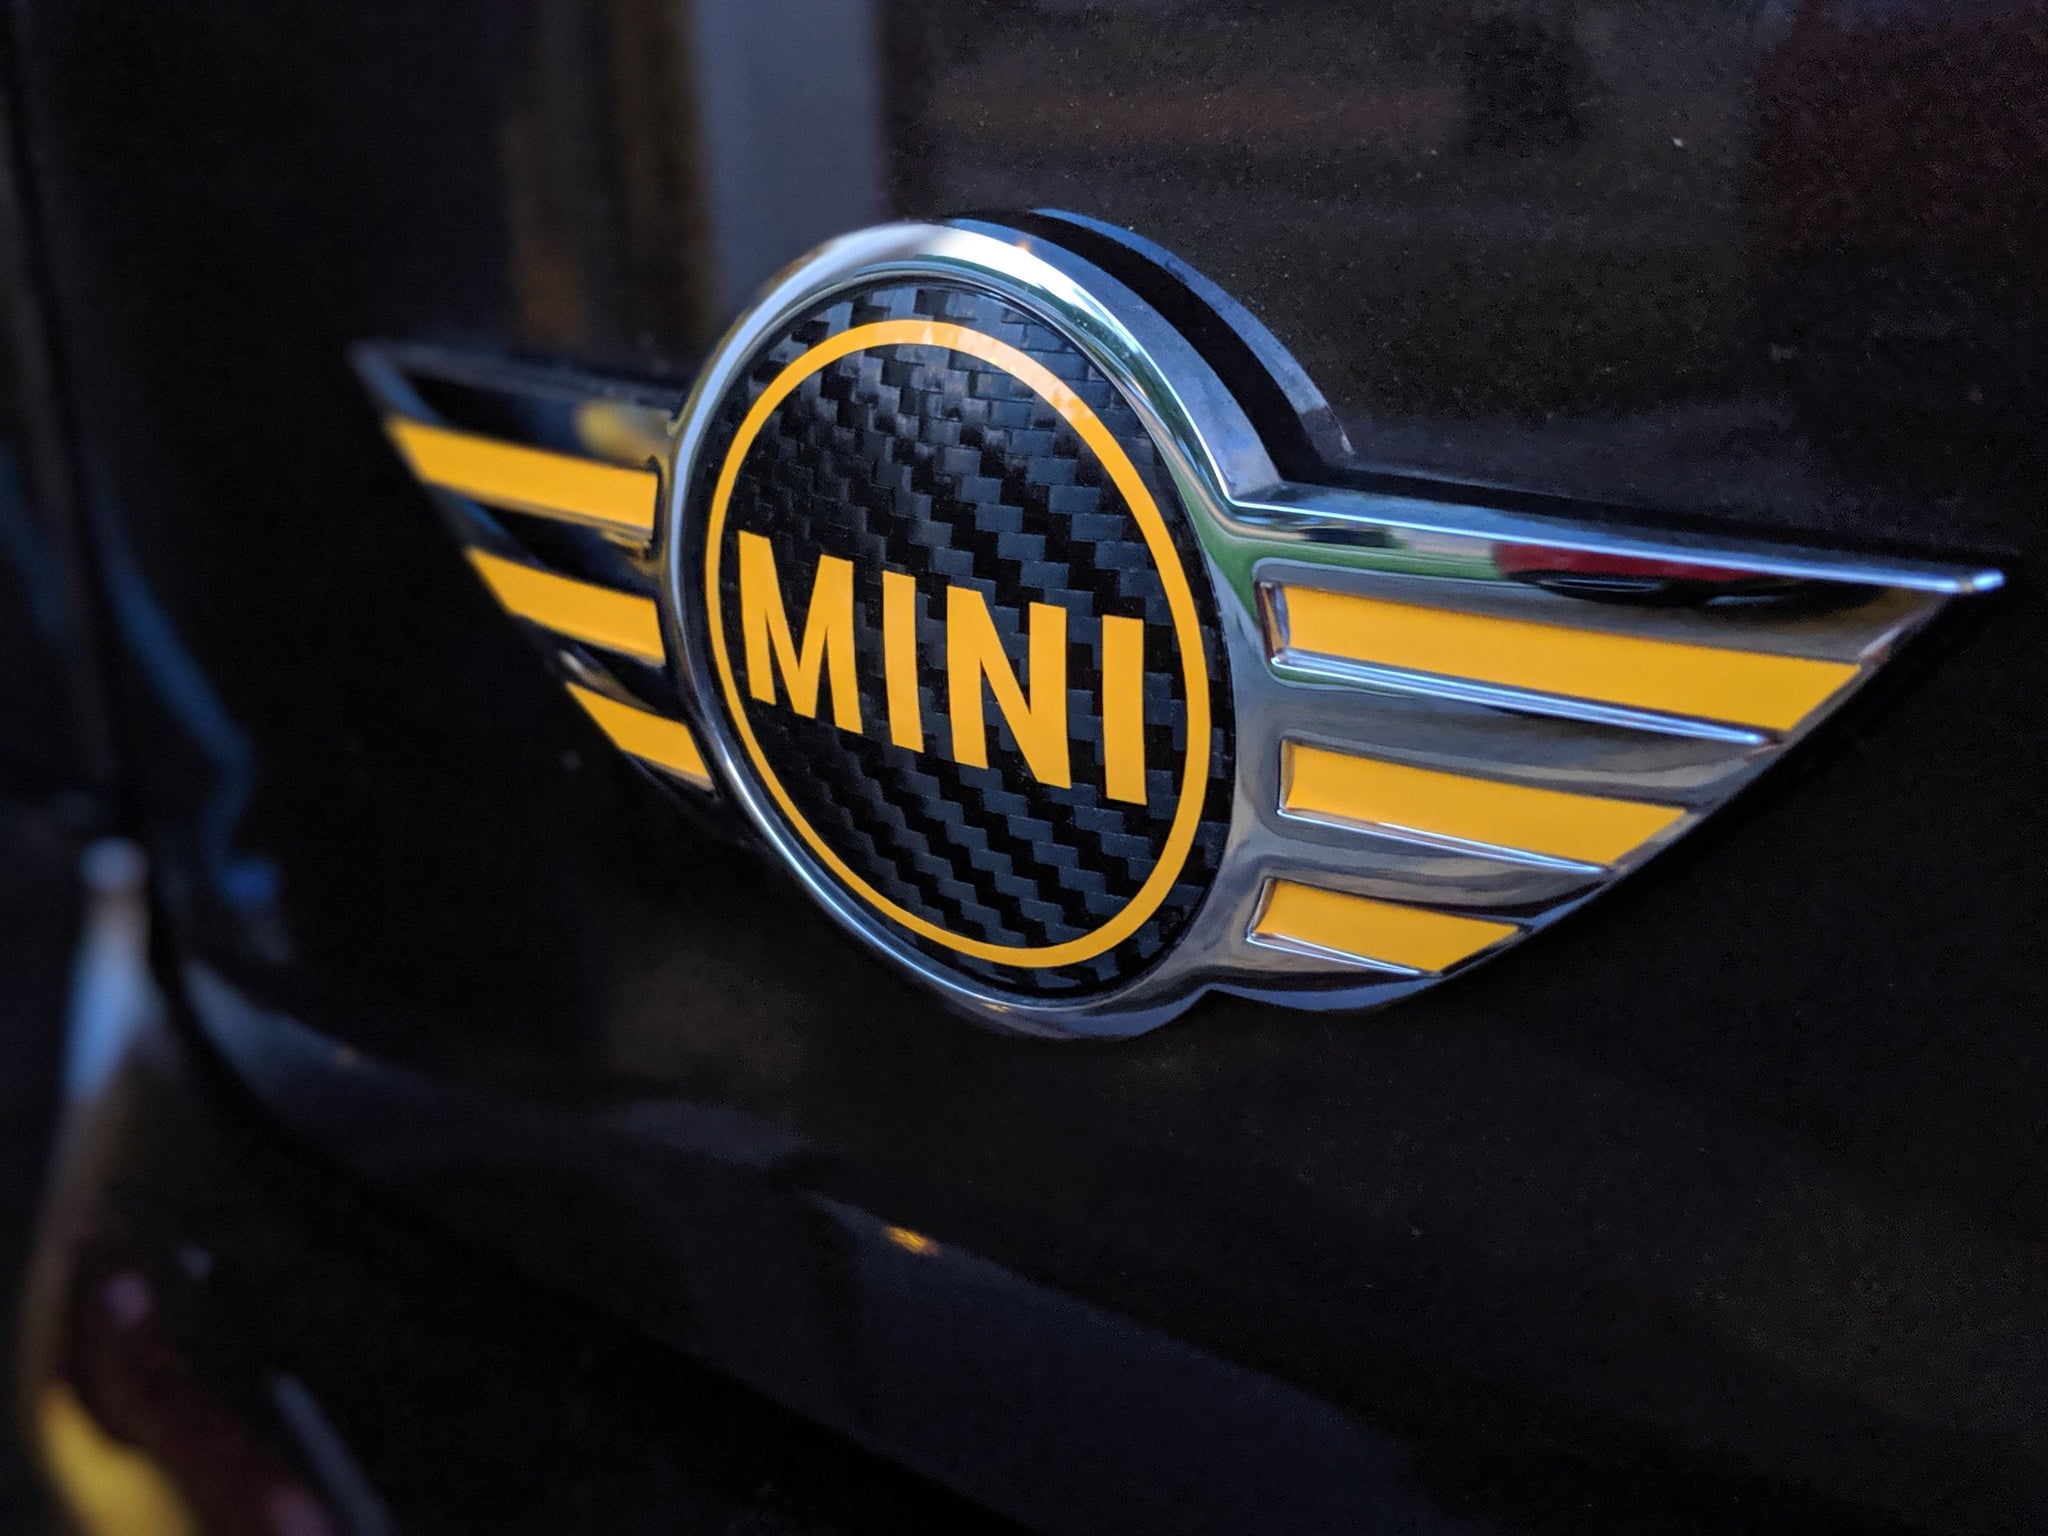 Mini Cooper - Mini Emblem Center Circle  and Wings Combo (Single)